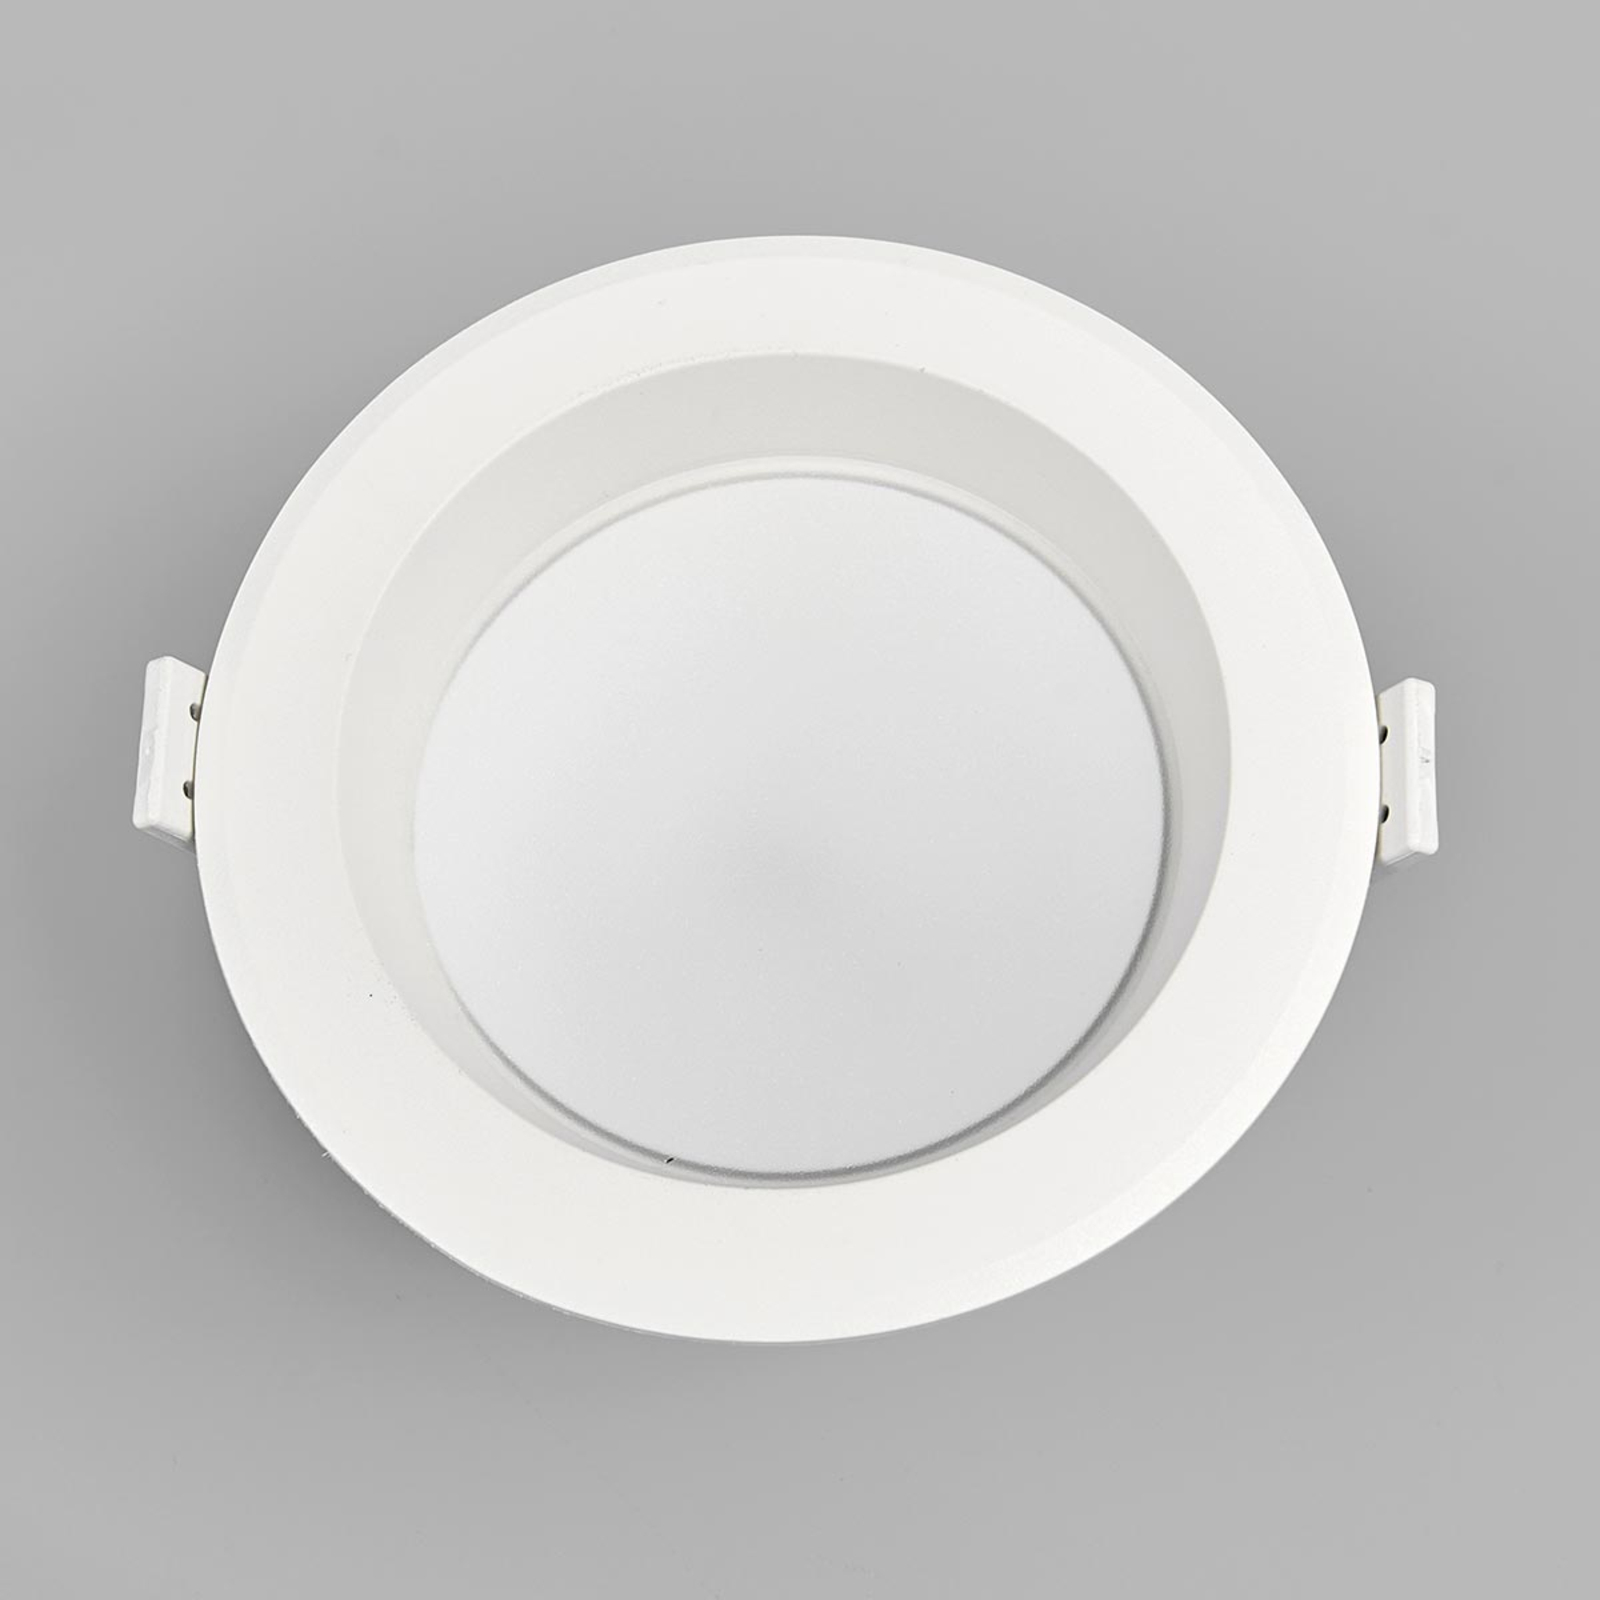 haar Overtollig Conserveermiddel Arian - LED inbouwspot in wit, 11,3 cm 9W | Lampen24.be